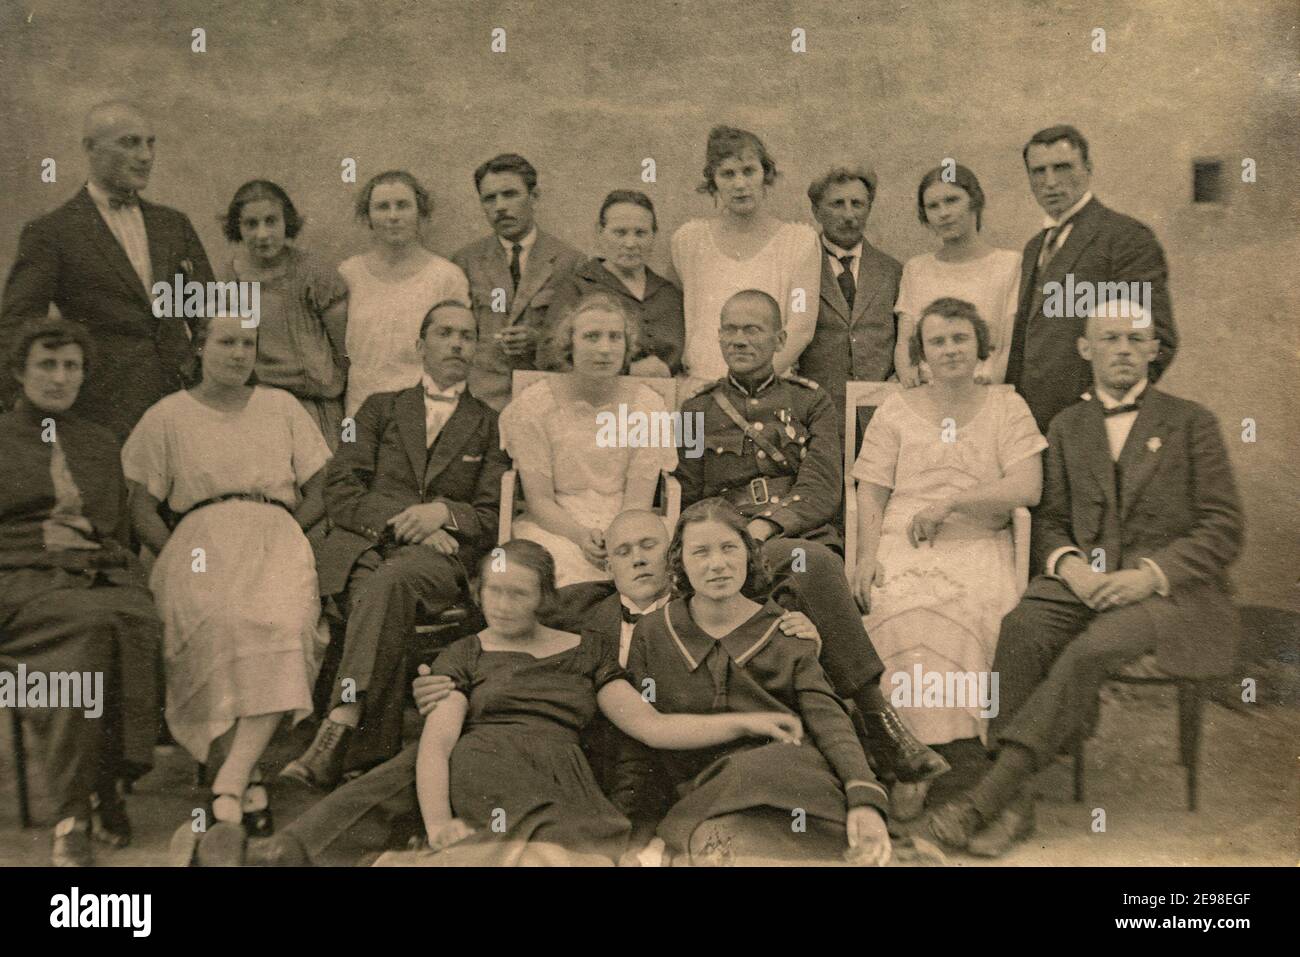 Lettonie - VERS les années 1920 : photo de groupe des invités de la fête. Ancienne photo d'archive historique. Quelques hommes en uniforme. Banque D'Images